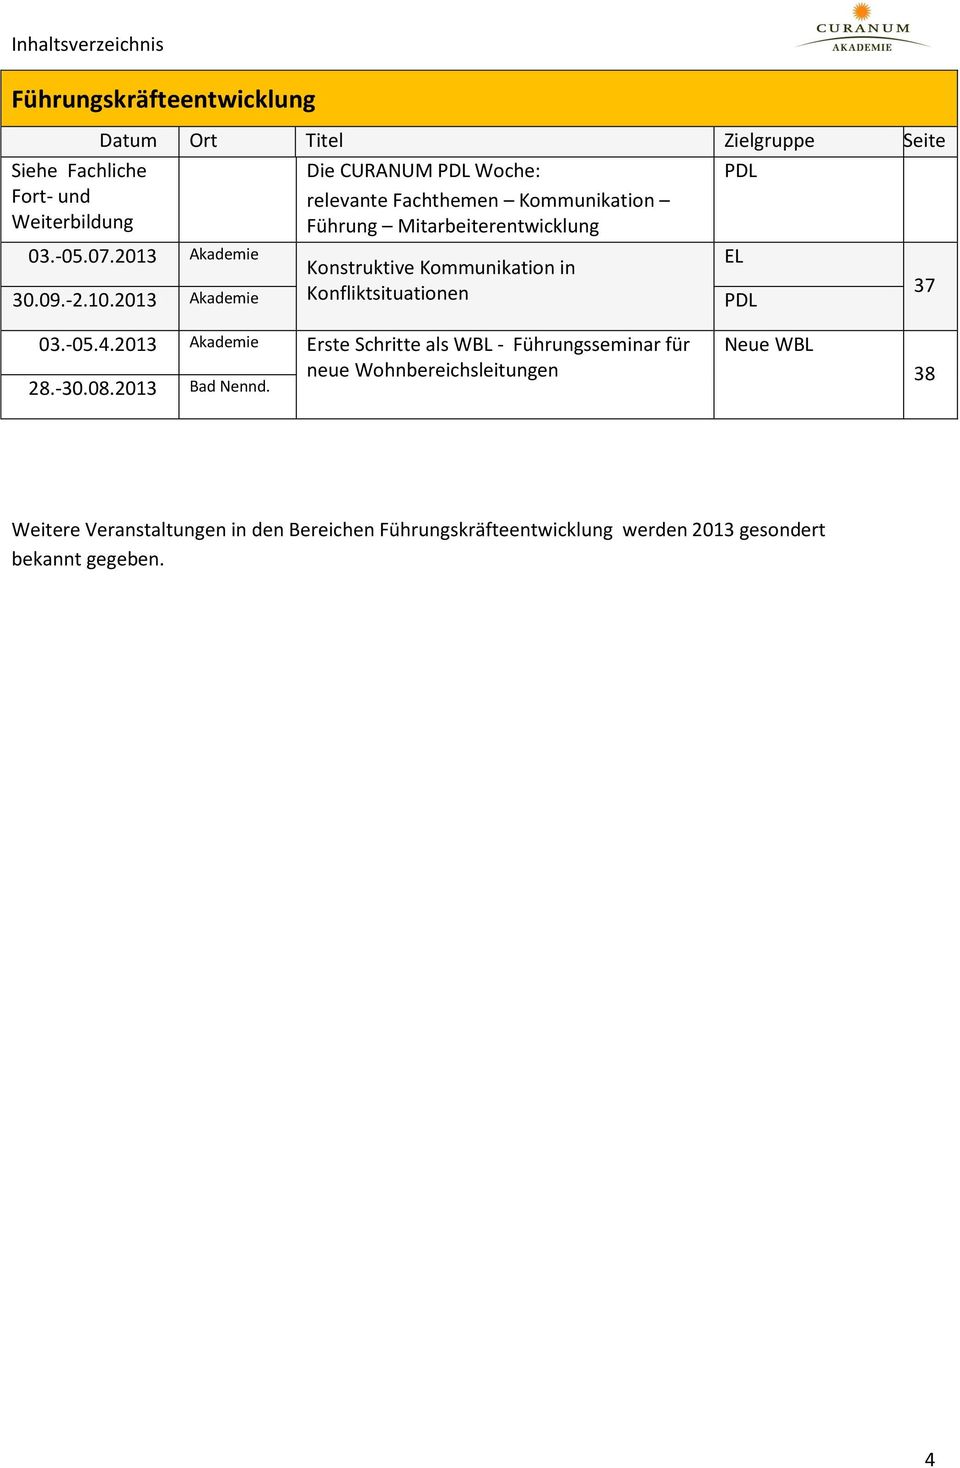 10.2013 Akademie Konfliktsituationen PDL 37 03.-05.4.2013 Akademie Erste Schritte als WBL - Führungsseminar für 28.-30.08.2013 Bad Nennd.